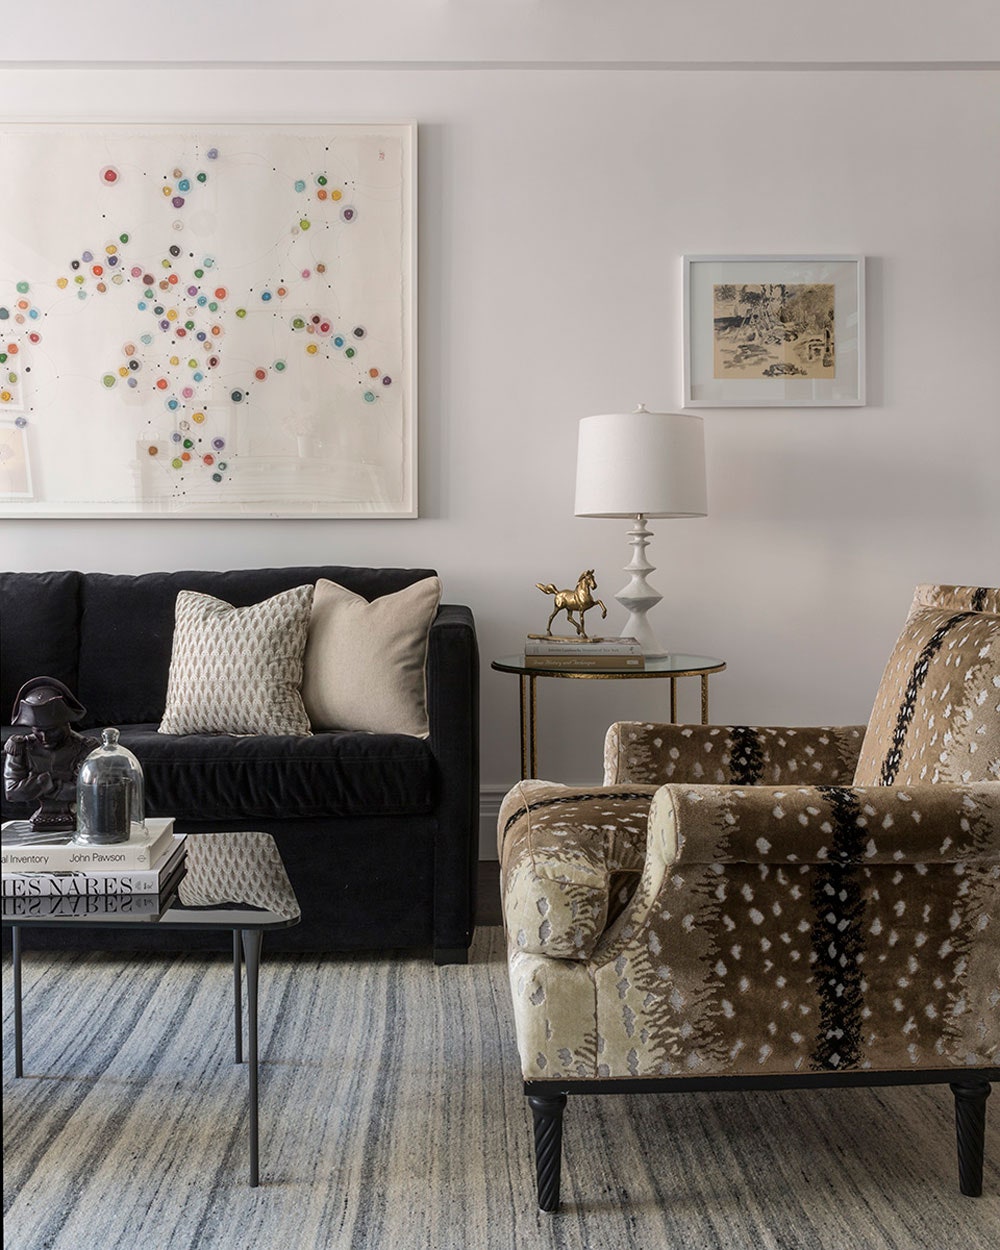 A view of designer Bennett Leifer's living room in New York